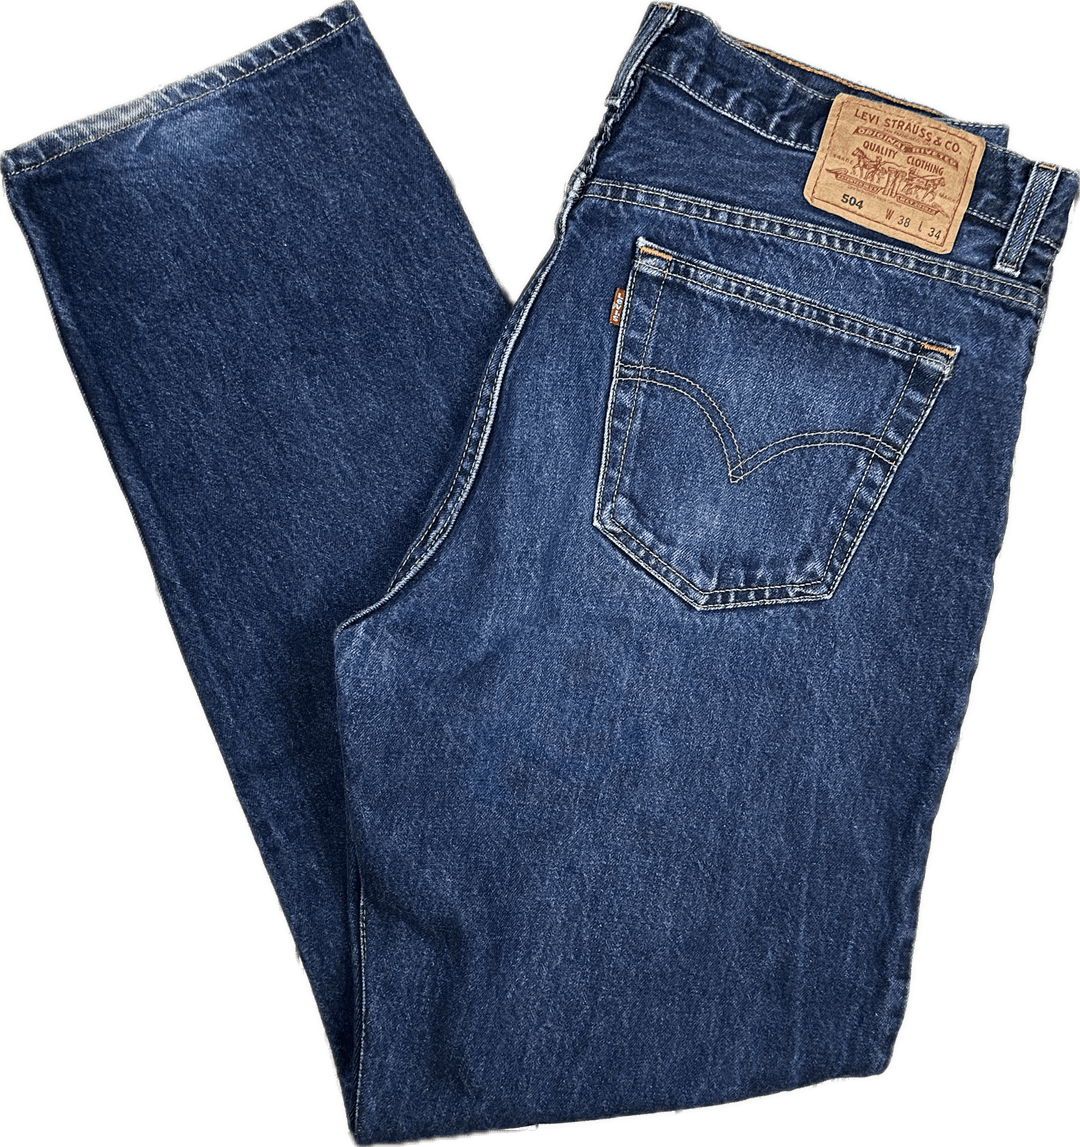 Levis 90's Vintage Australian Made Levis 504 Classic Jeans - Size 38/34 - Jean Pool